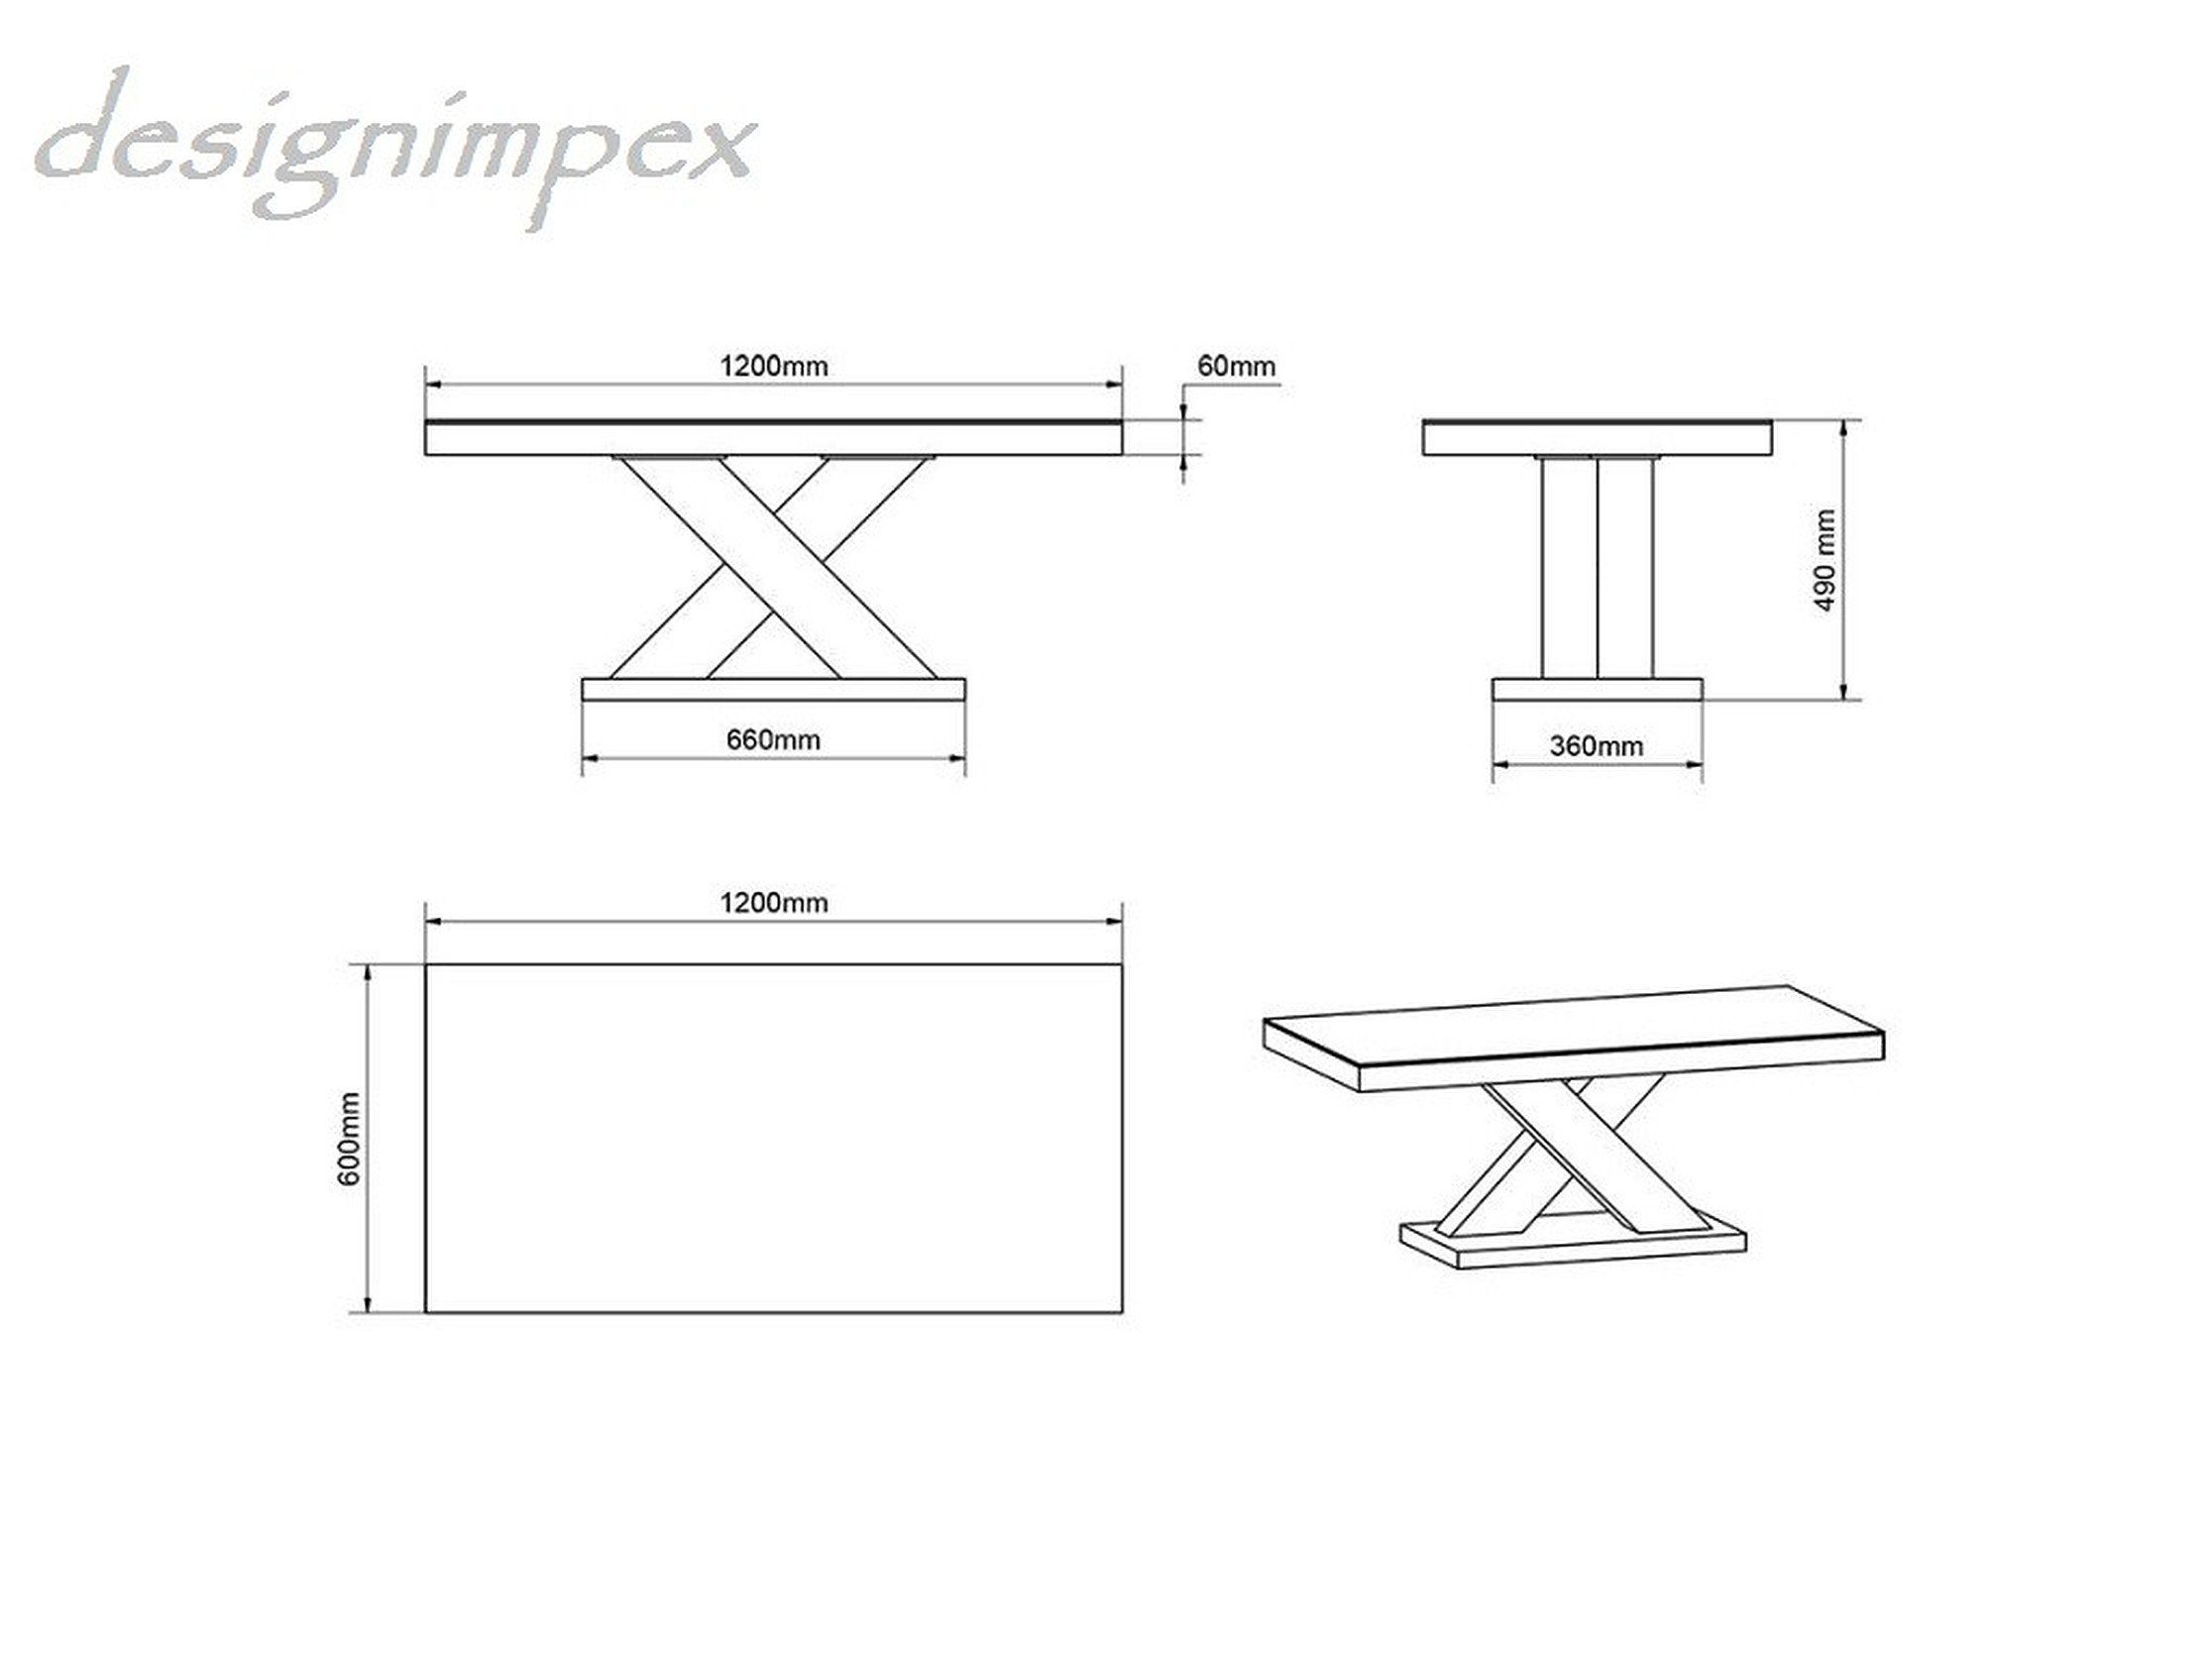 H-888 Hochglanz Tisch Beton Design - designimpex Couchtisch Highgloss / Beton Weiß Wohnzimmertisch Weiß Hochglanz